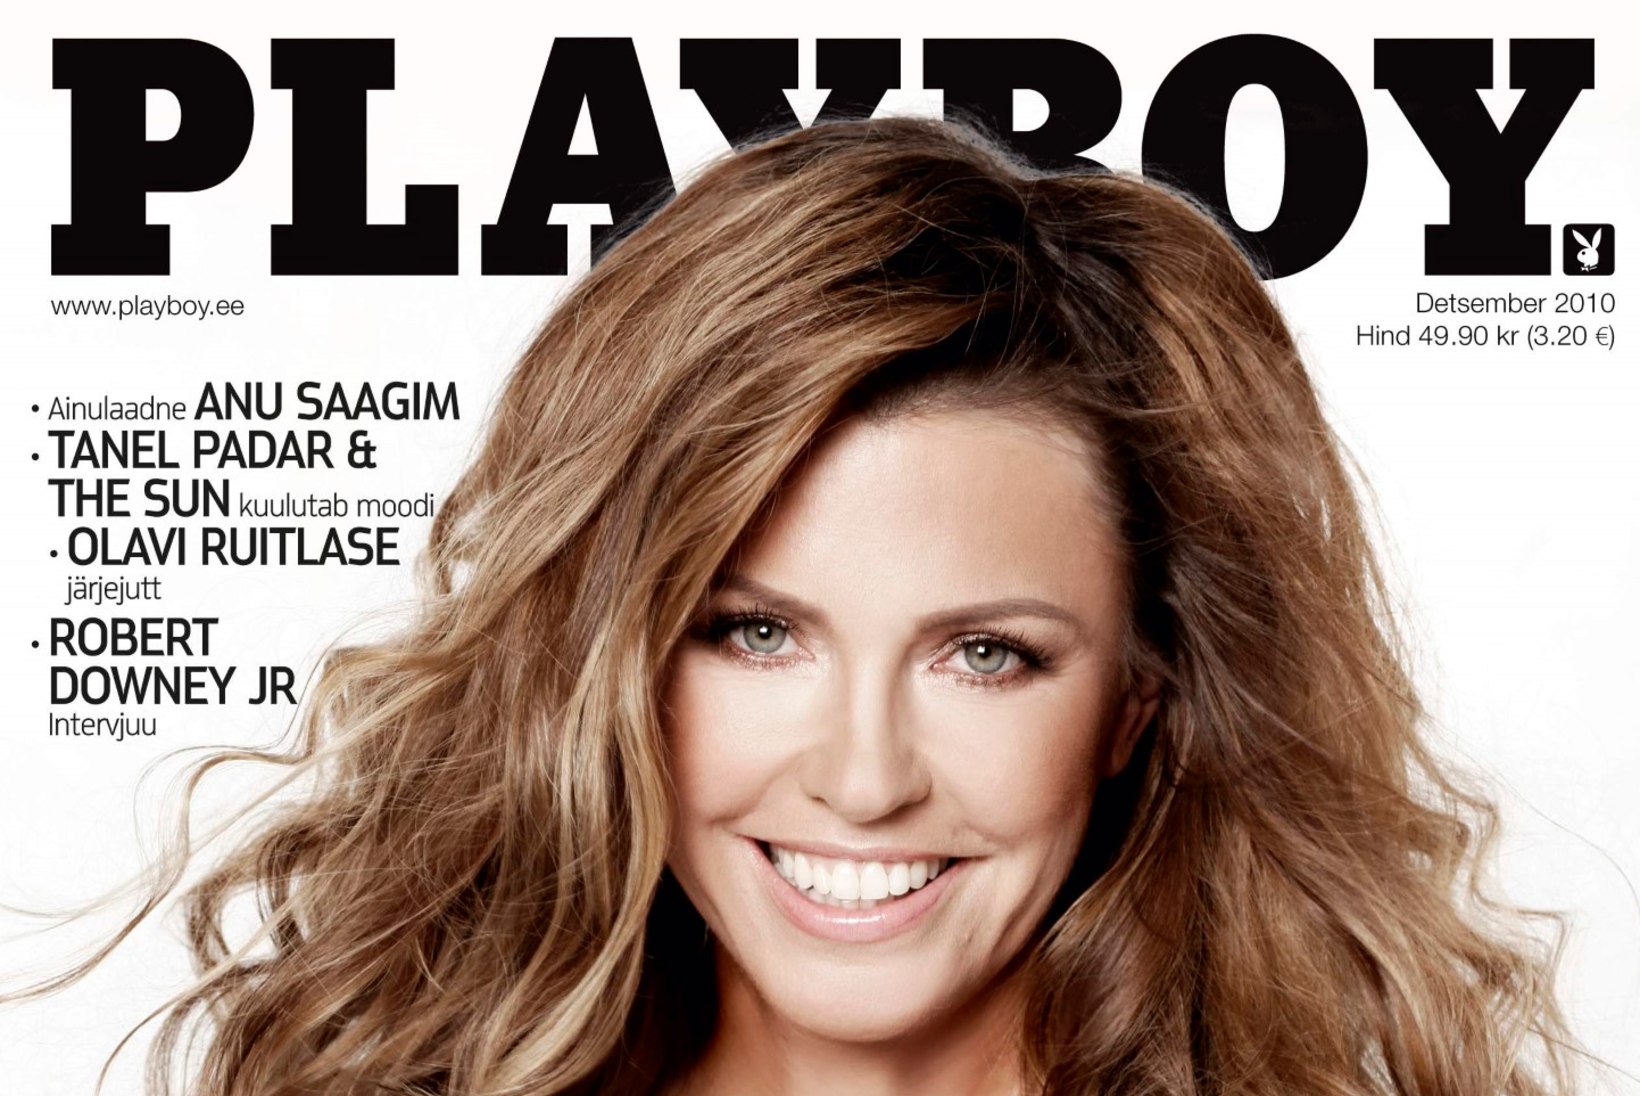 UNUSTAMATUD: vaata, kes on Playboy Eesti ajakirja kaanel poseerinud! Sinu lemmik on ...?